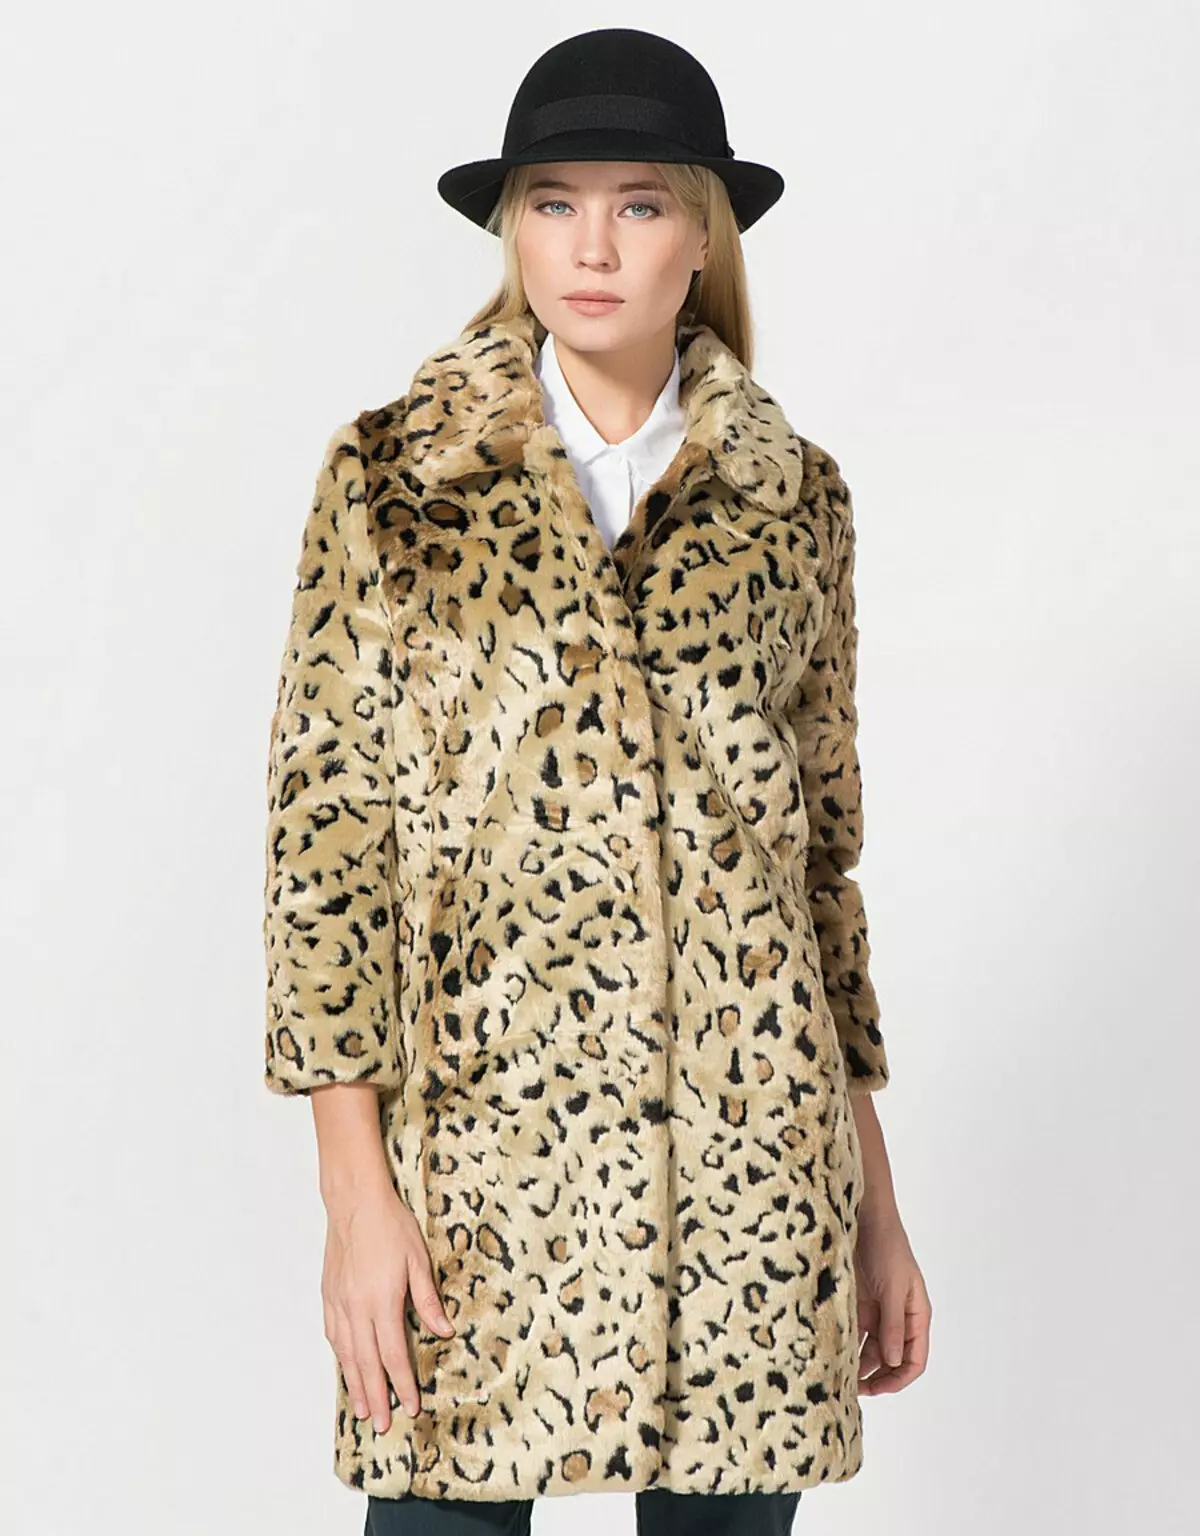 Leopard päls kappa (46 foton): Modeller med leopardtryck och leopard päls 330_20